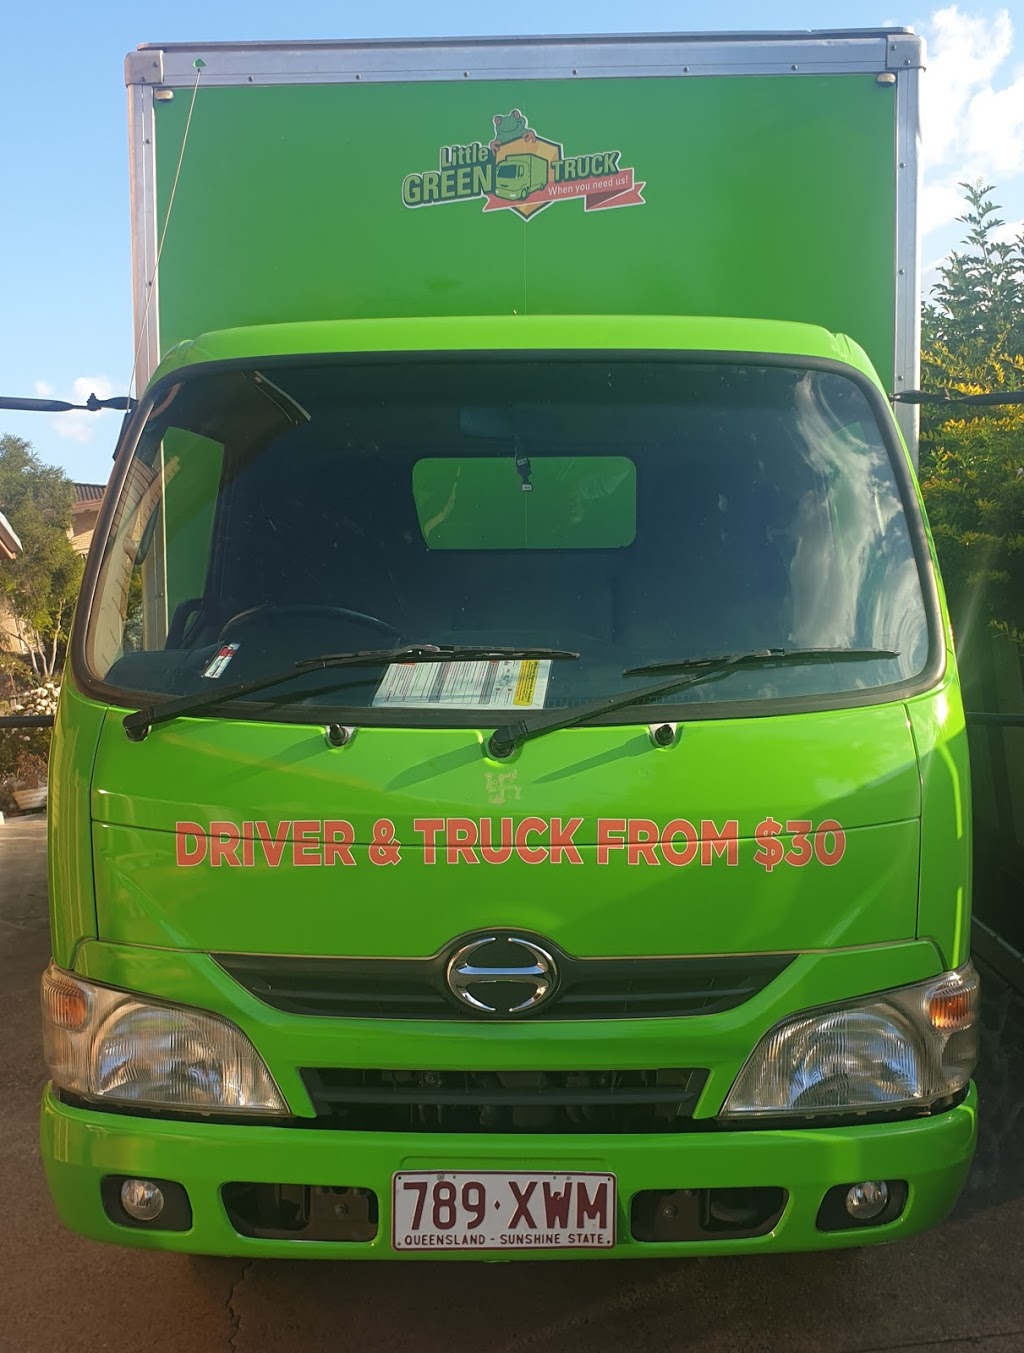 Little Green Truck The Gabba | 144 Samuel St, Camp Hill QLD 4152, Australia | Phone: 0422 506 040